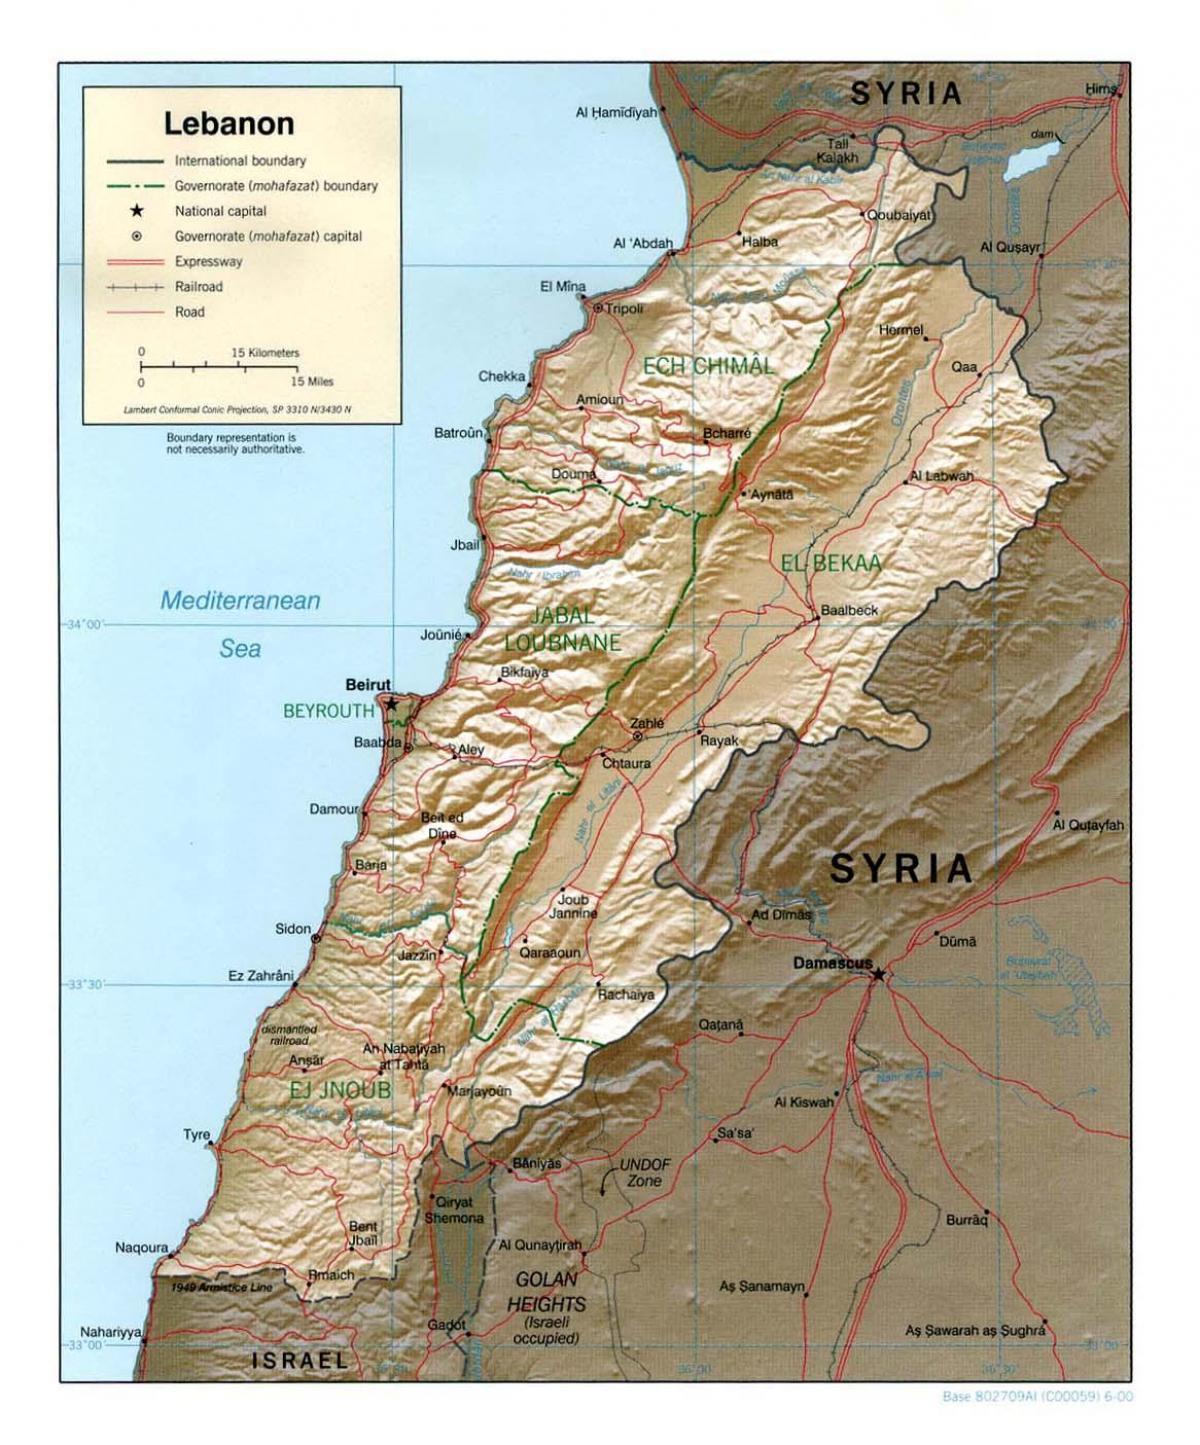 लेबनान के मानचित्र स्थलाकृतिक